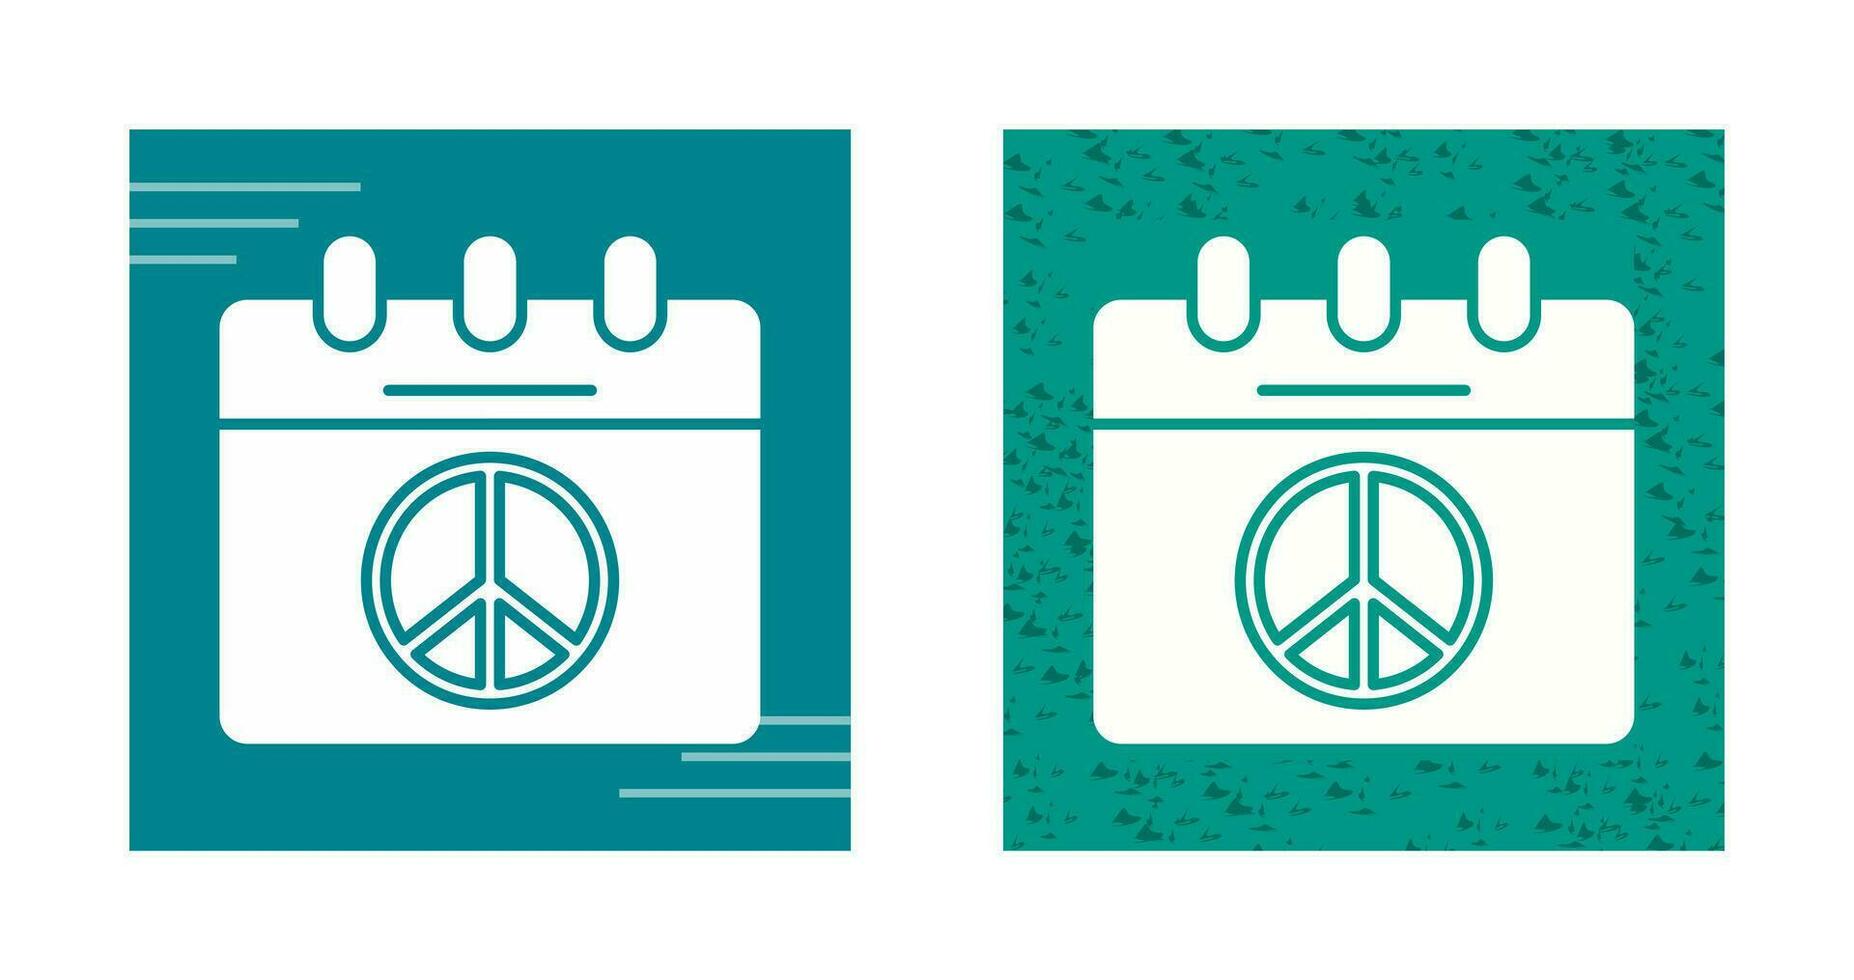 ícone de vetor de calendário de paz